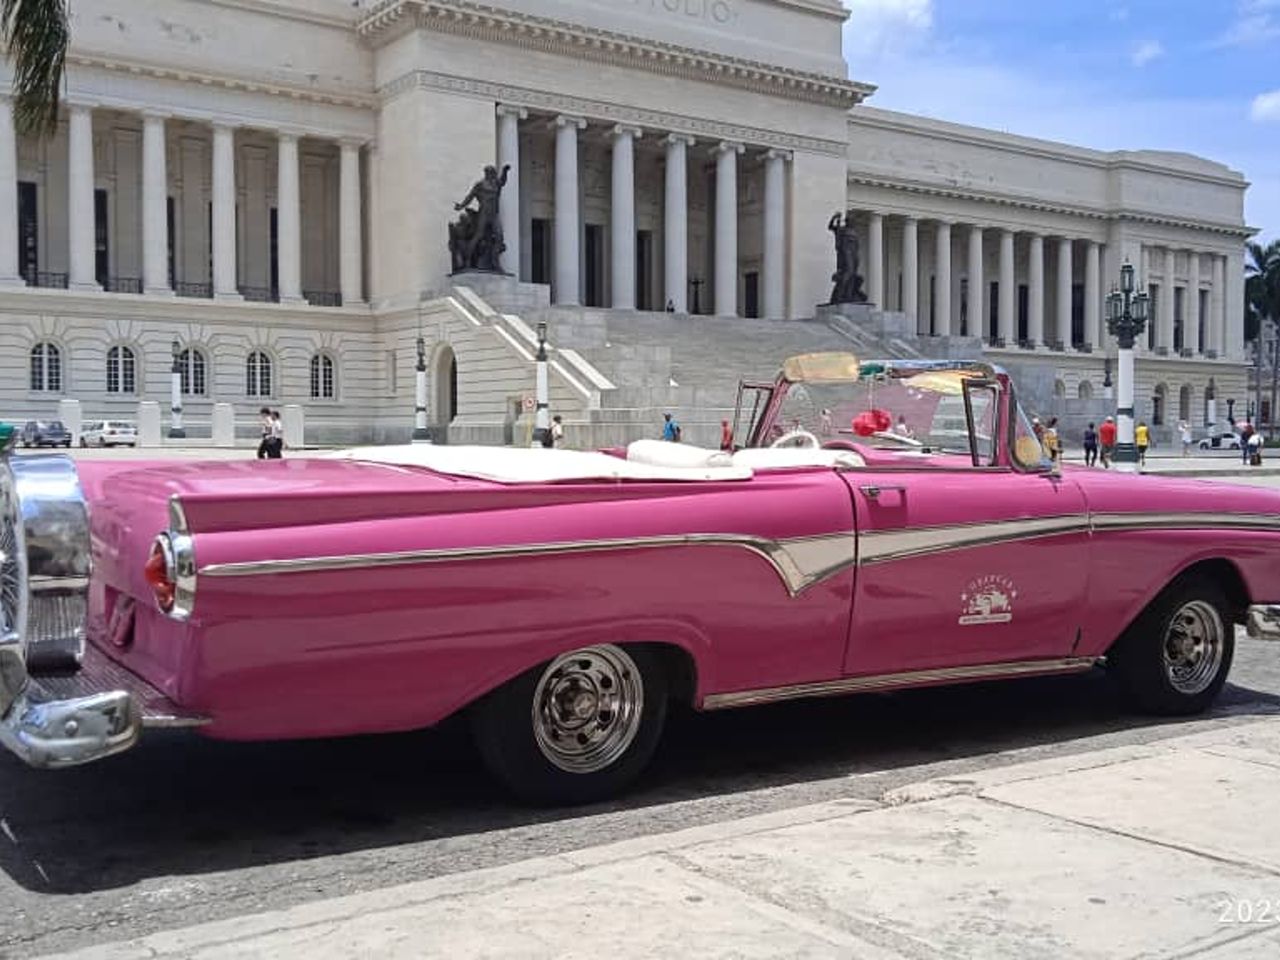 Красавица Гавана: для тех, кто в столице | Цена 150€, отзывы, описание экскурсии